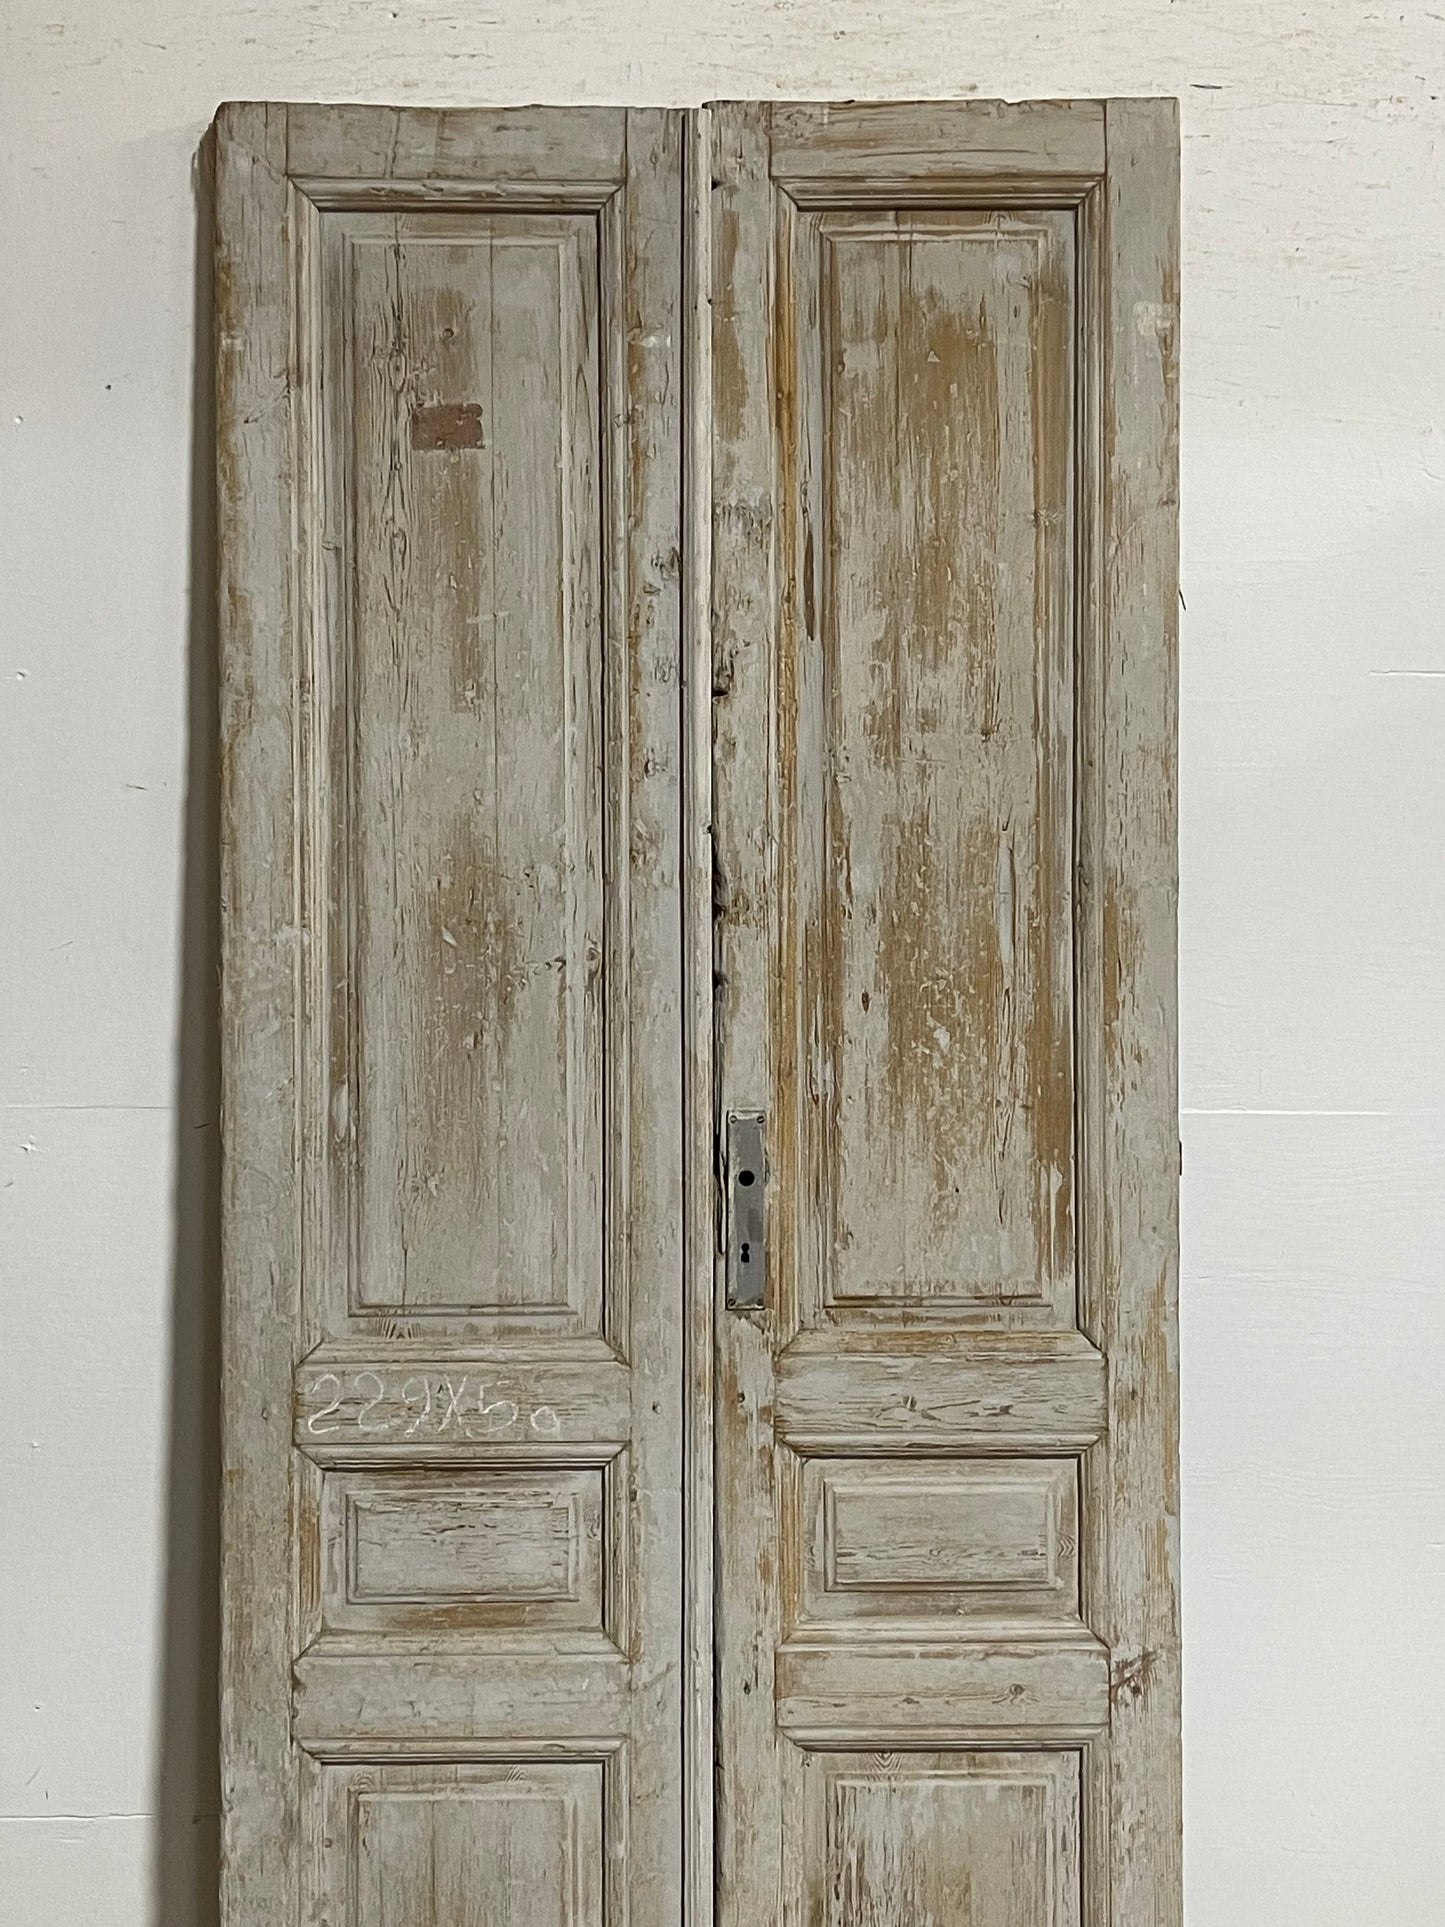 Antique French panel doors (90.75x39.75) I111s